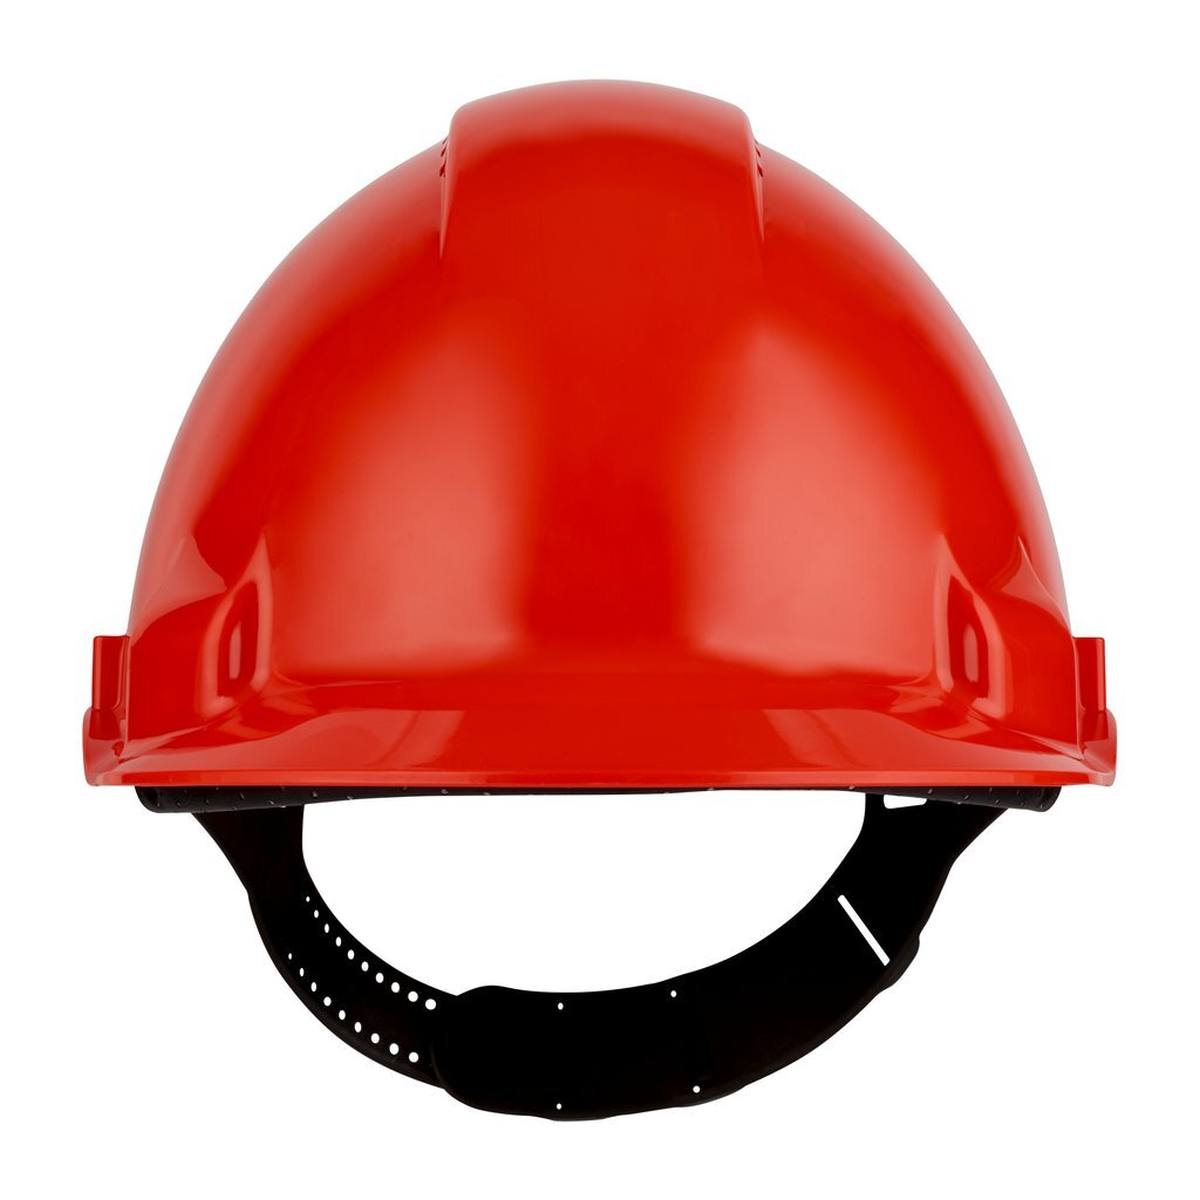 Casco de seguridad 3M G3000 G30CUR en rojo, ventilado, con uvicator, pinlock y banda de sudor de plástico